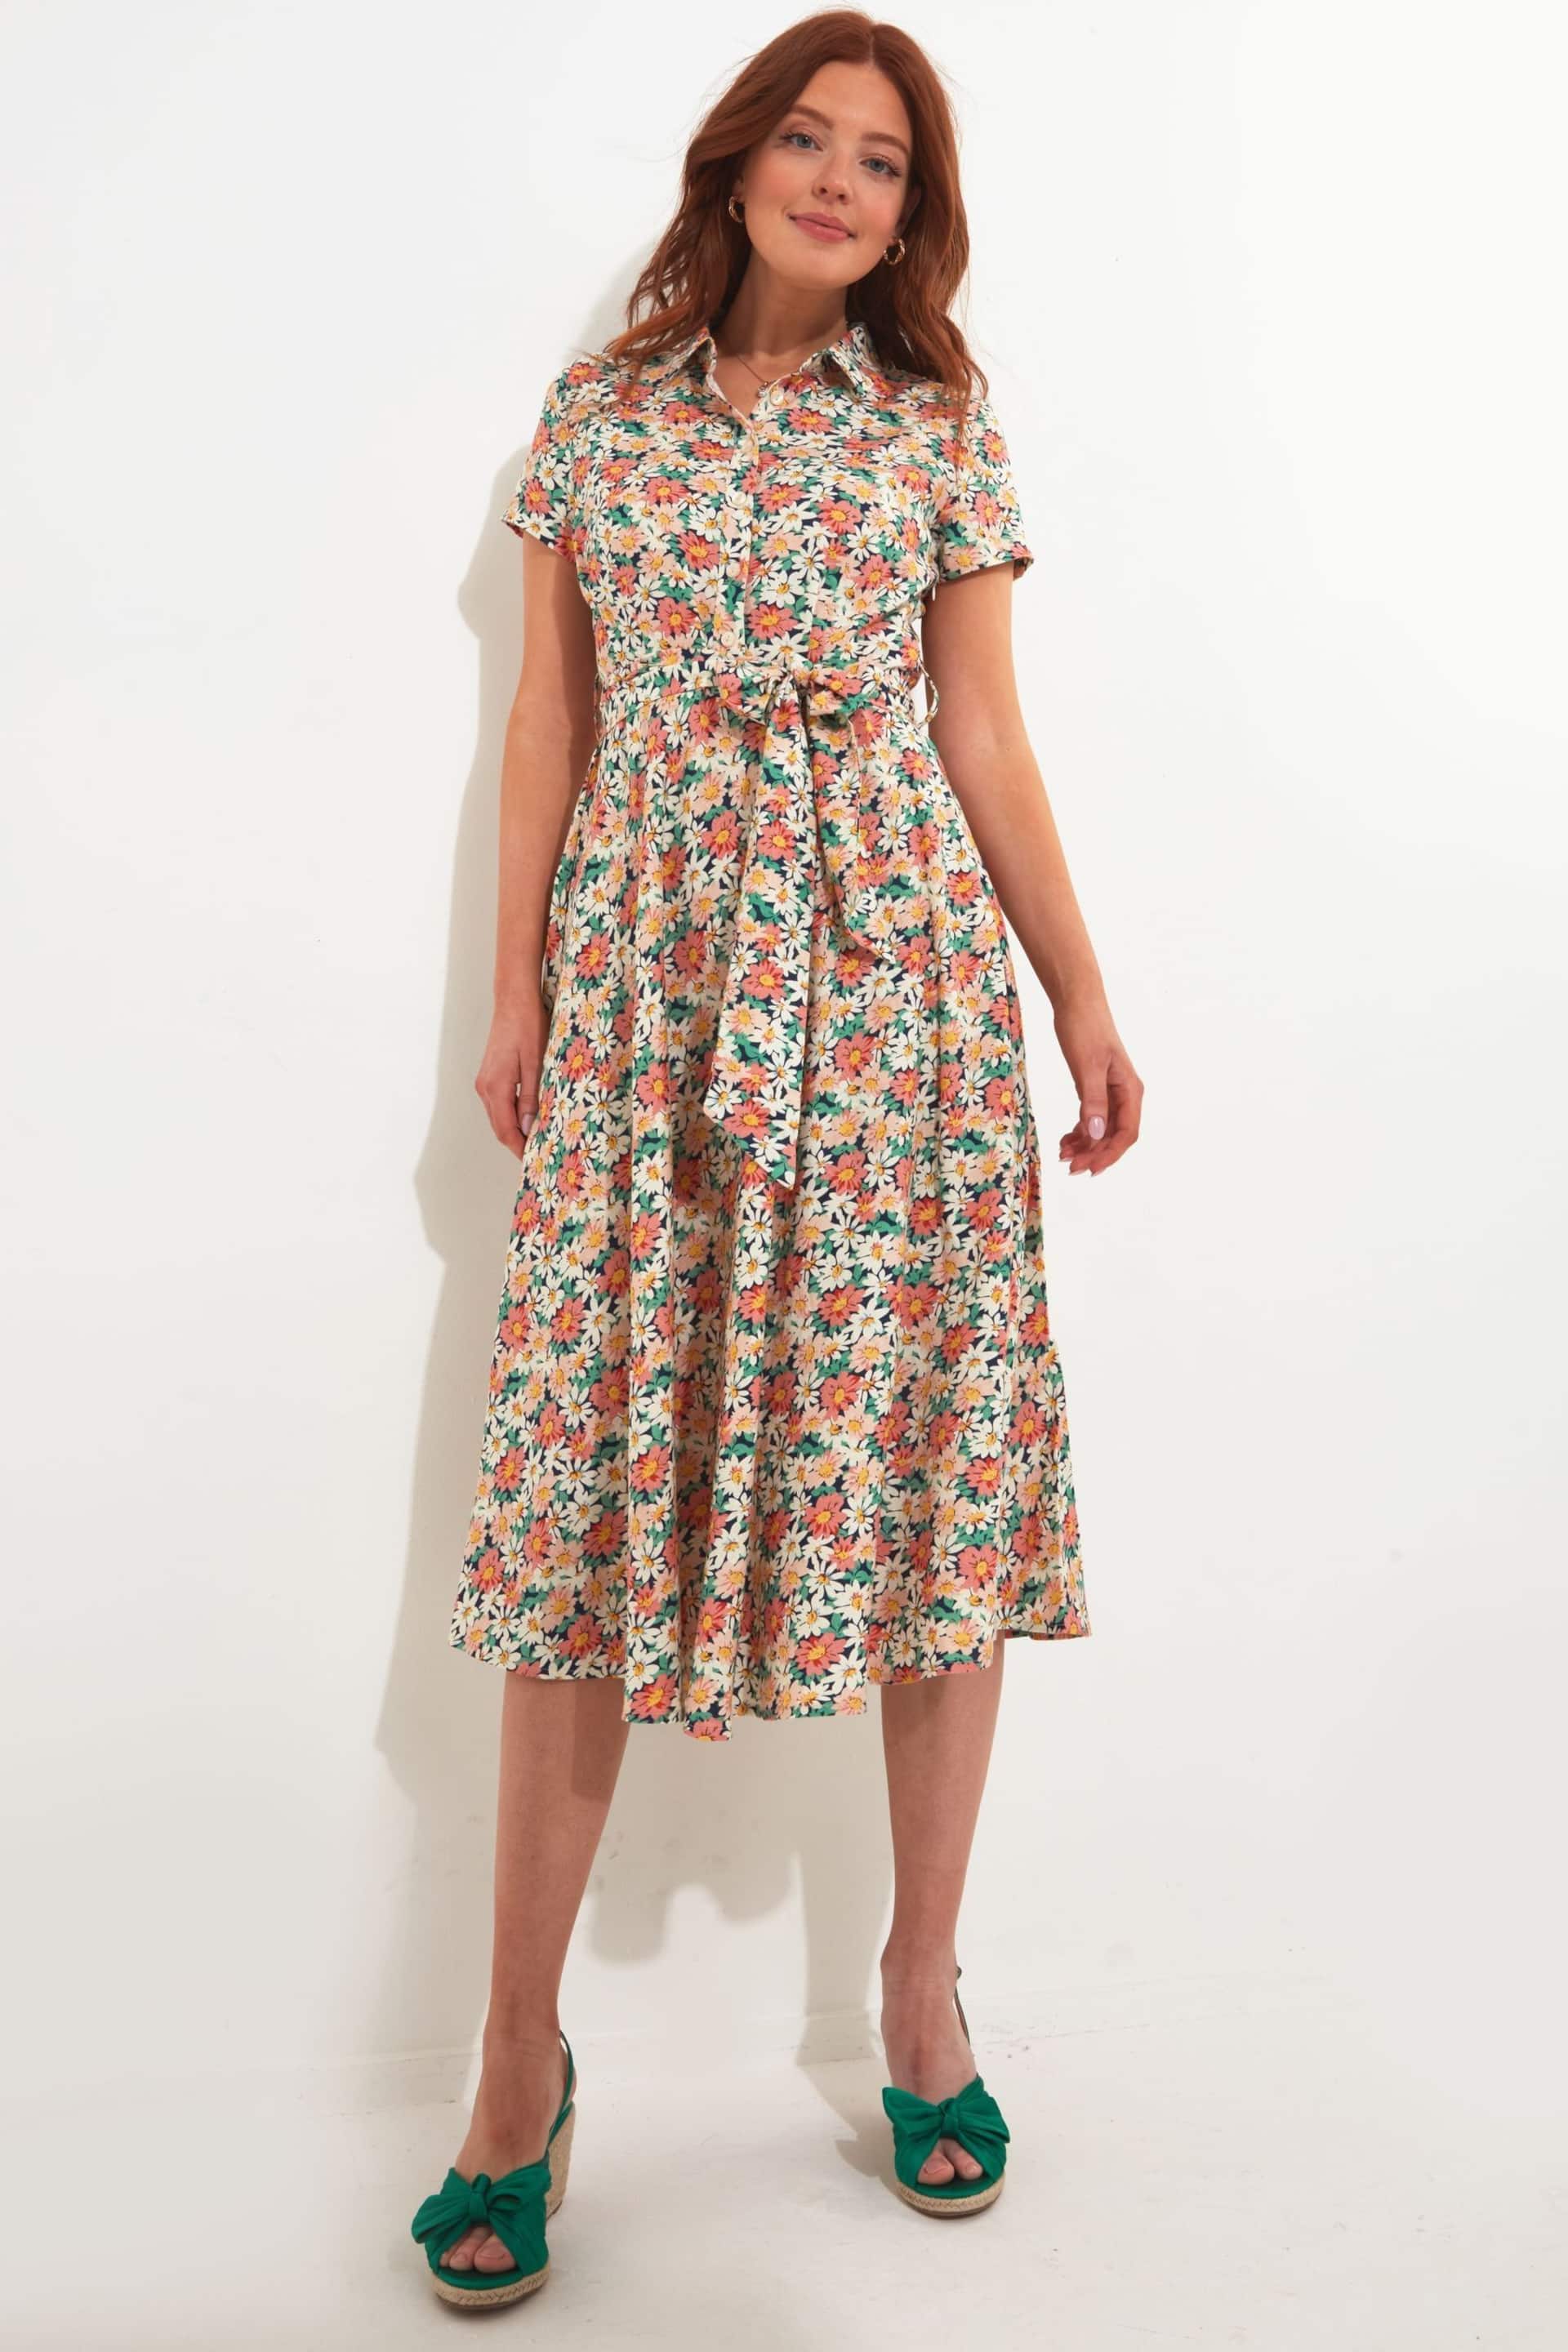 Joe Browns Cream Floral Print Short Sleeve Linen Blend Shirt Dress - Image 2 of 5